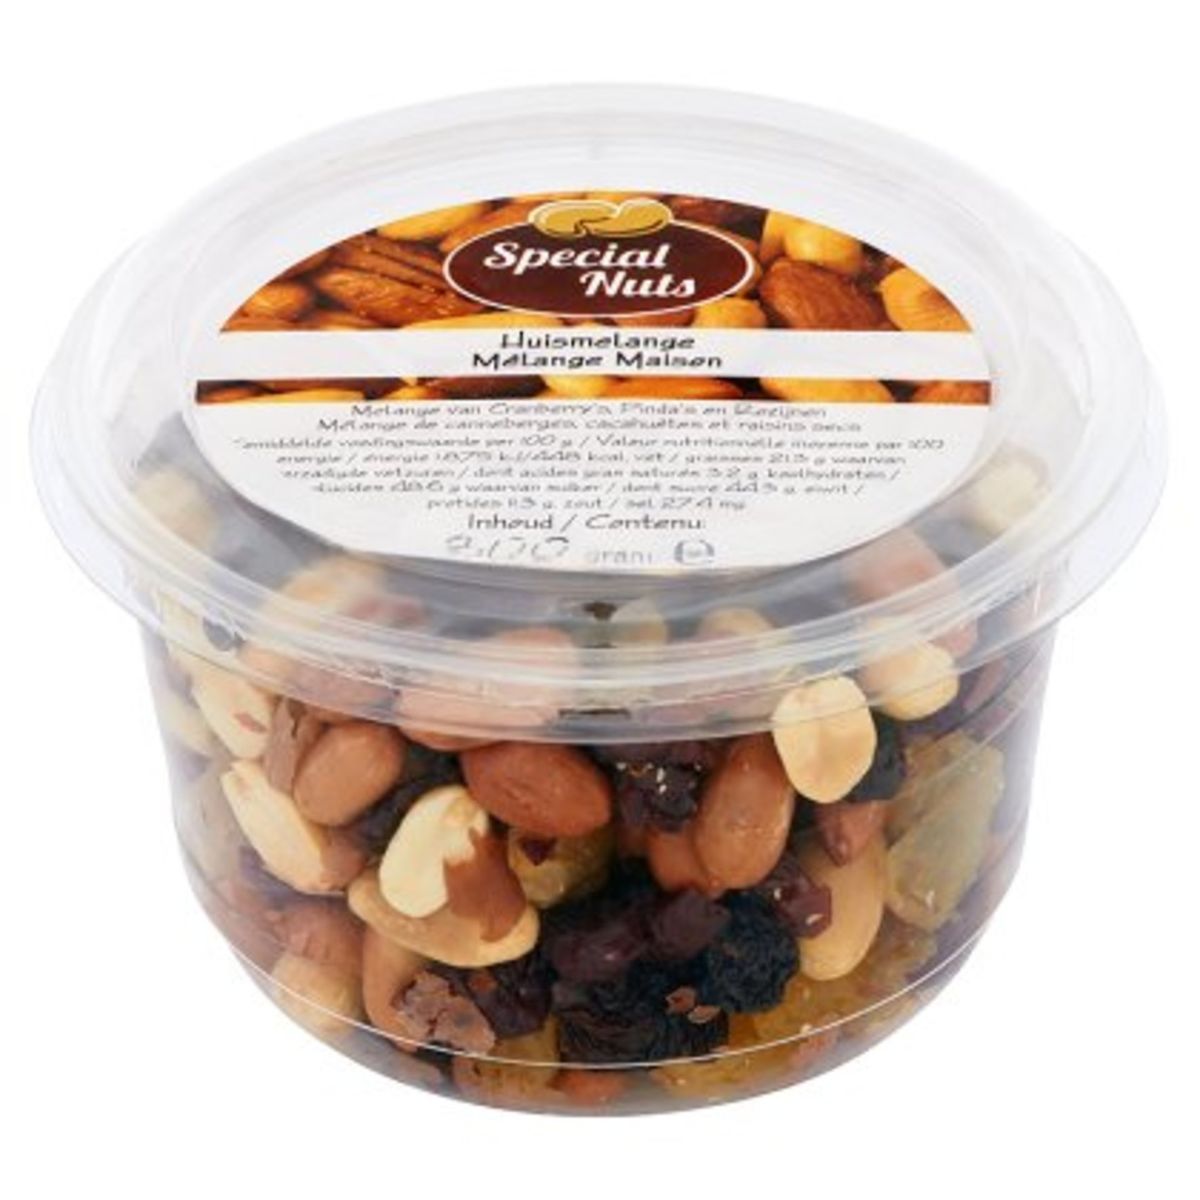 Special Nuts Huismelange van Cranberry's, Pinda's en Rozijnen 300 g